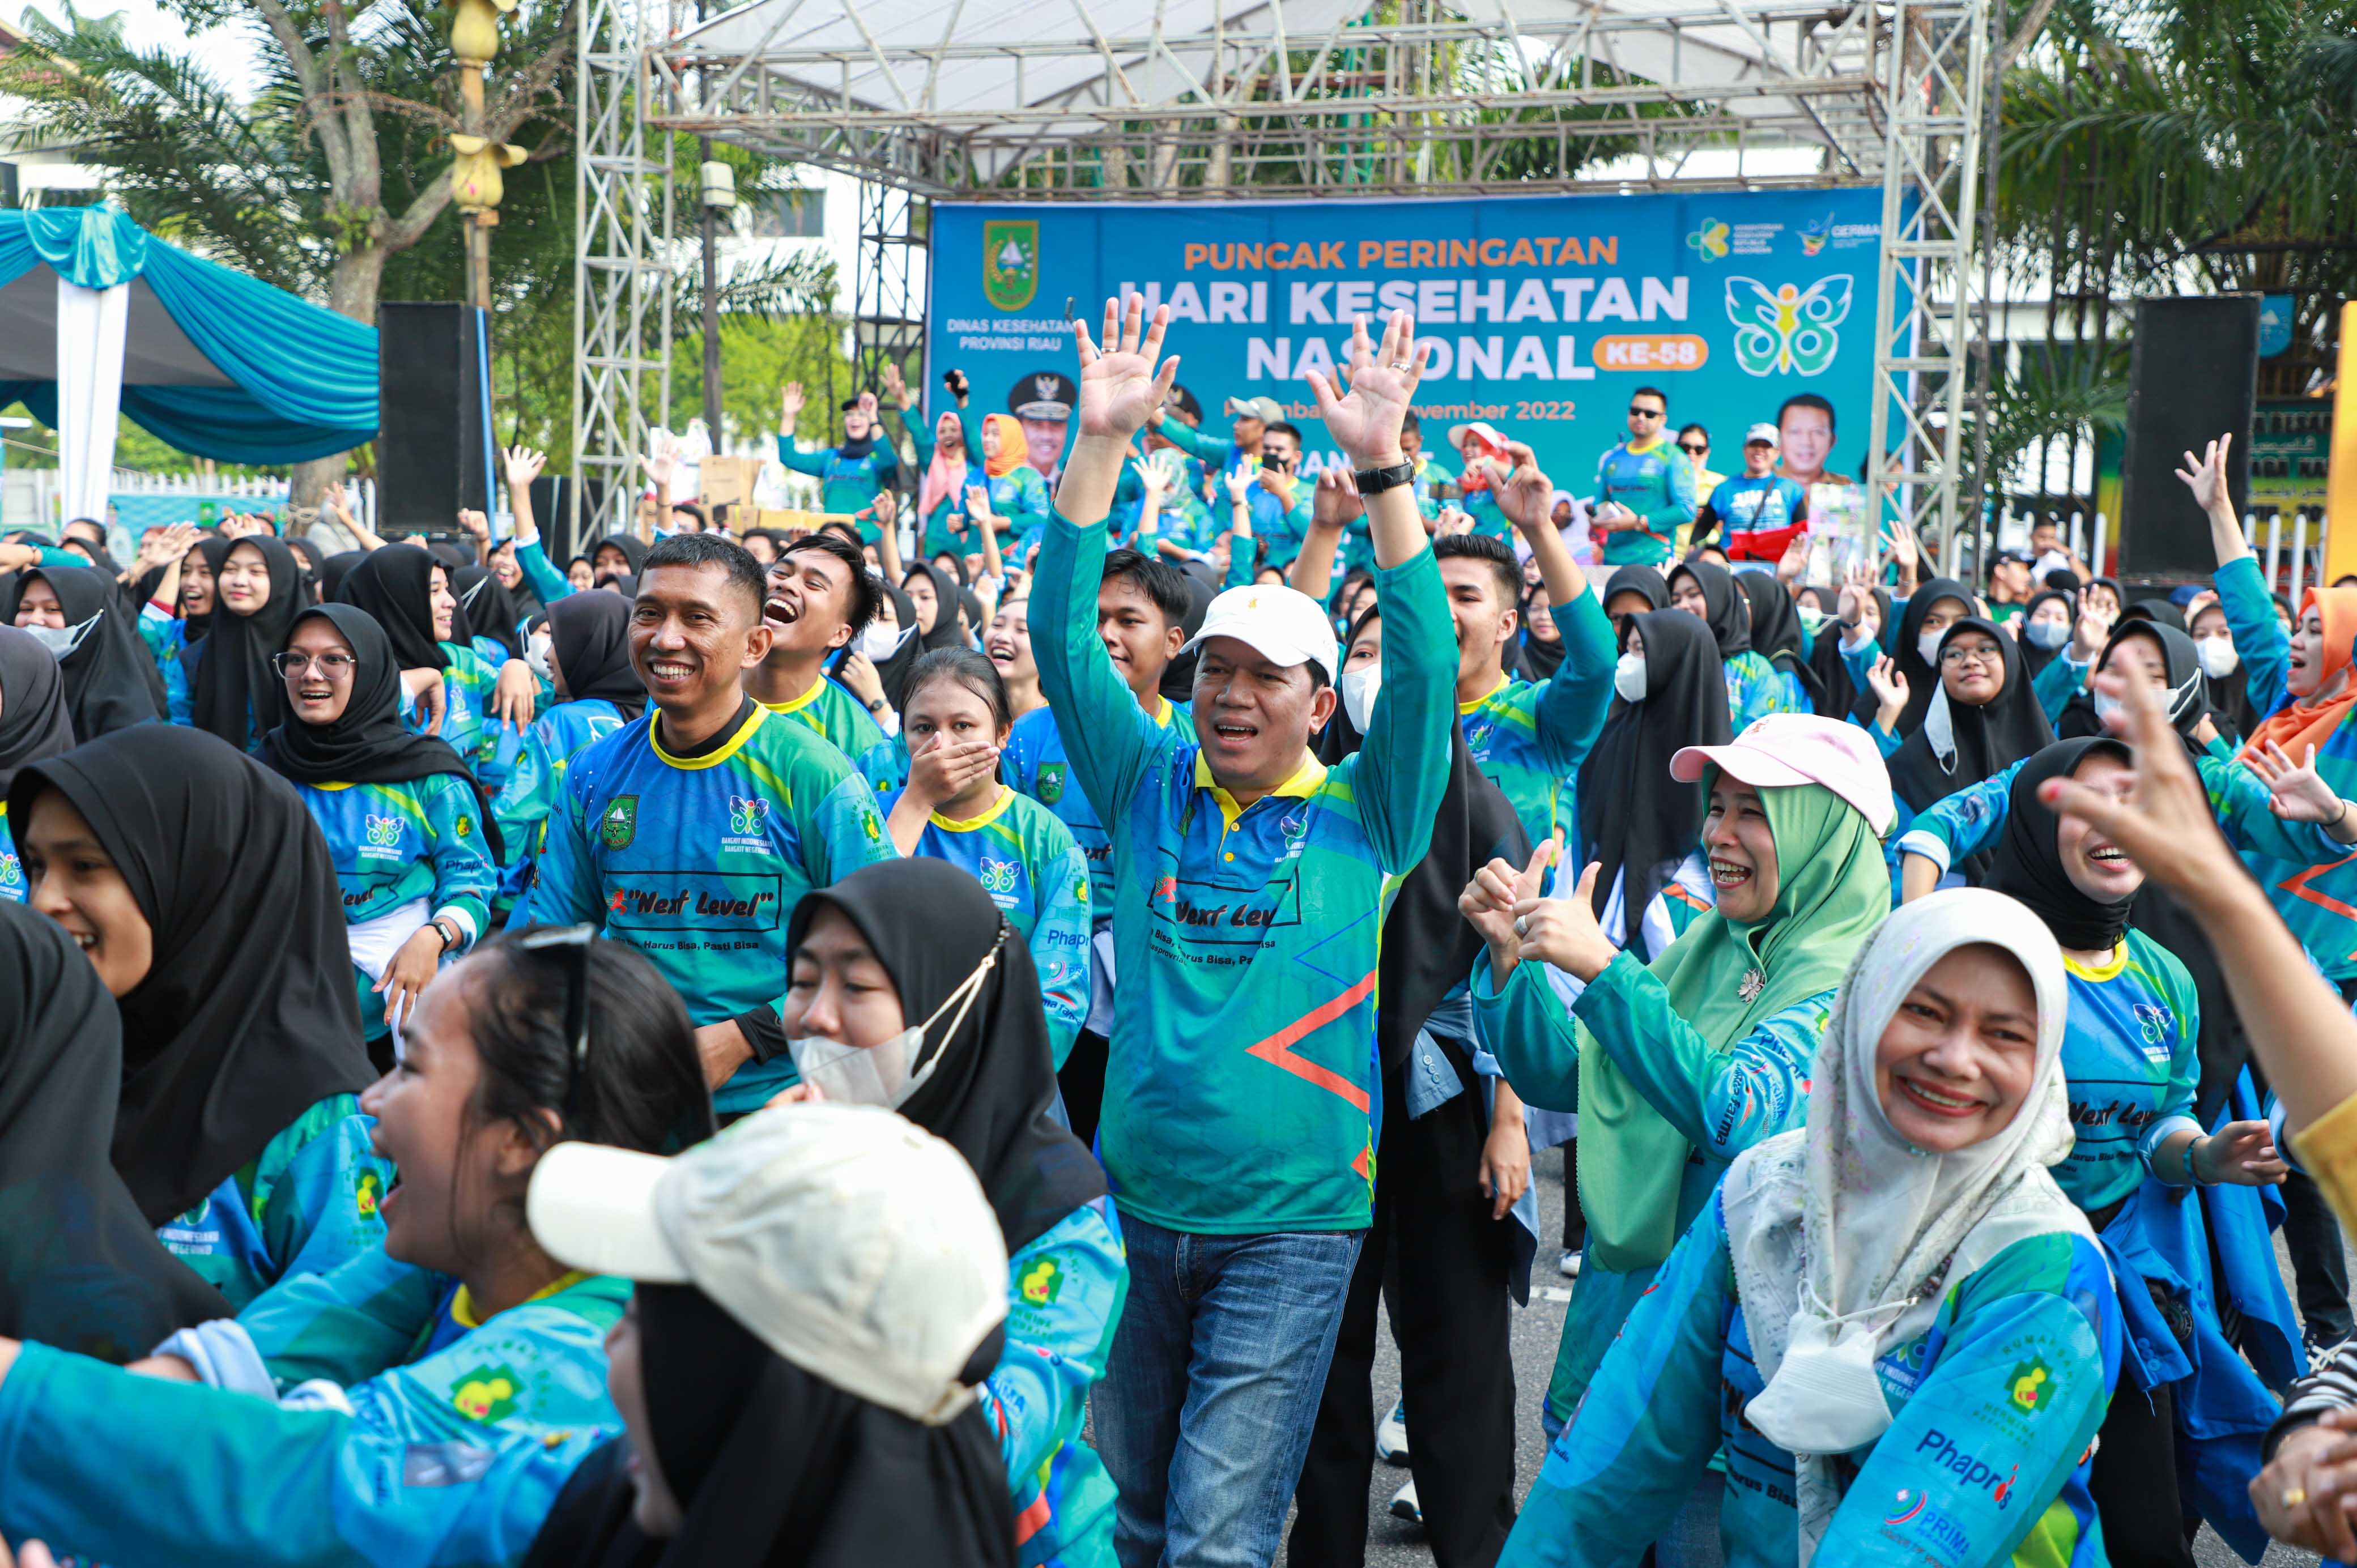 Puncak Peringatan Hari Kesehatan Nasional ke 58 di Provinsi Riau